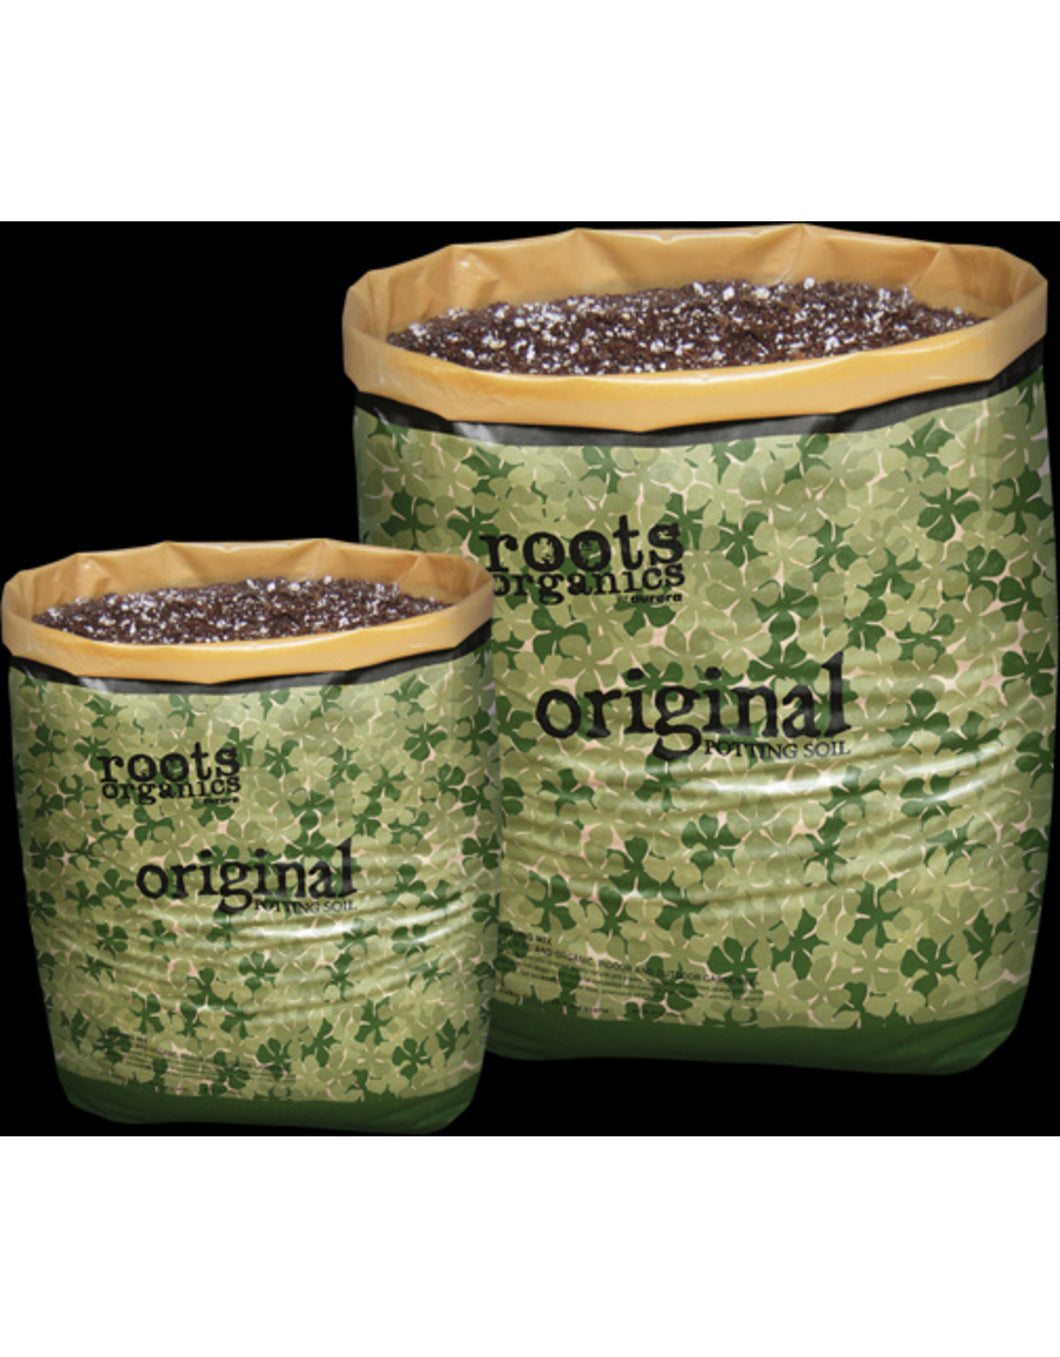 Roots Organics - Original Potting Soil 1.5 Cu/Ft